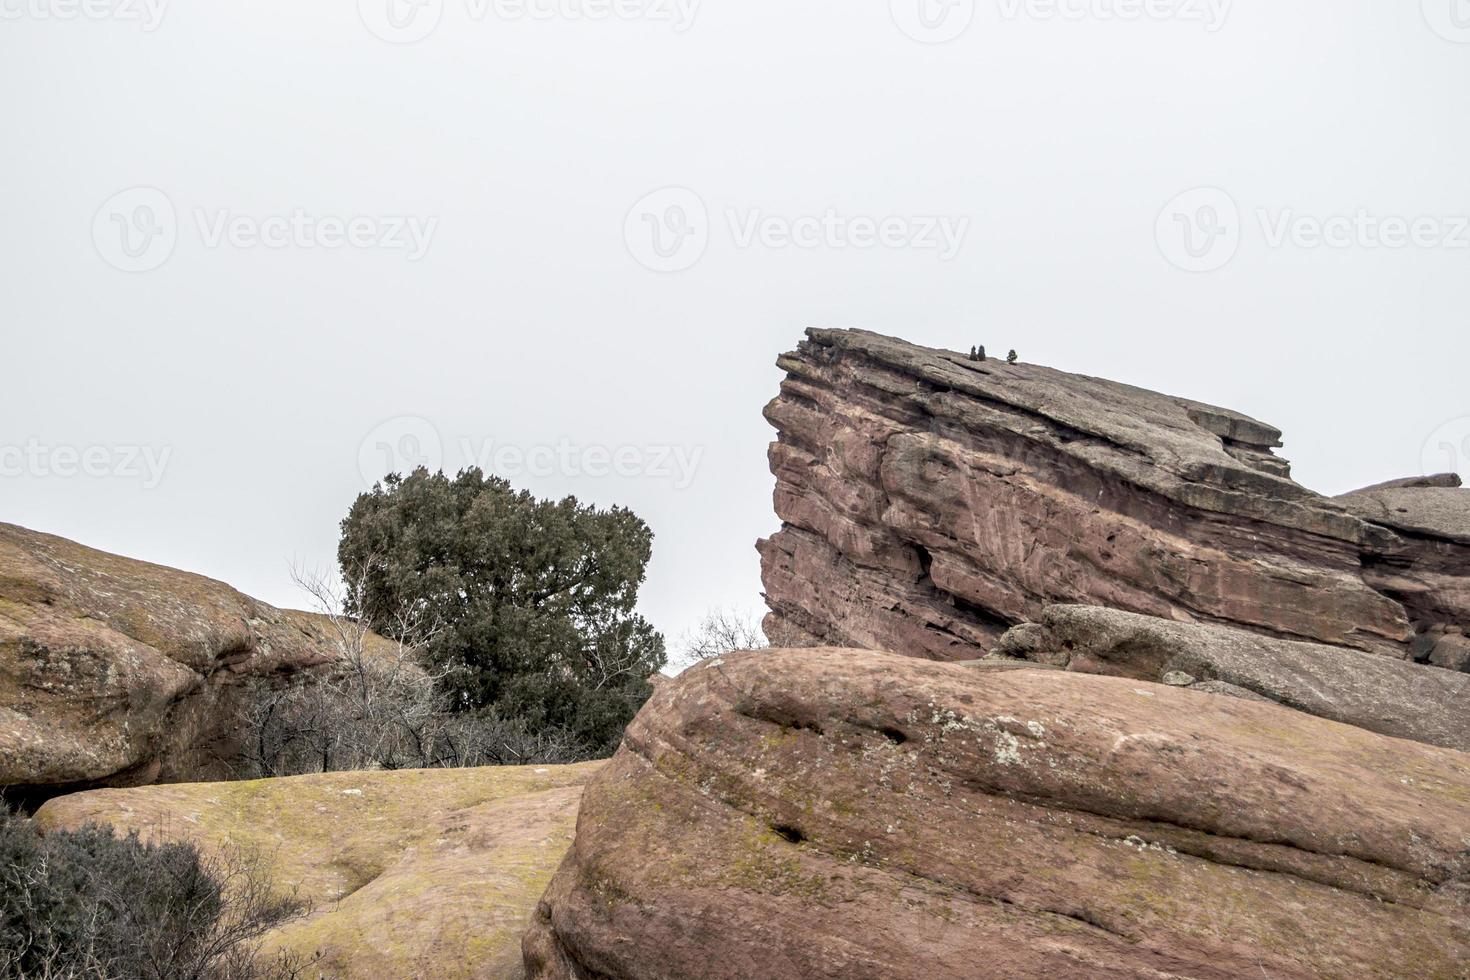 scène géologique des roches rouges du colorado photo